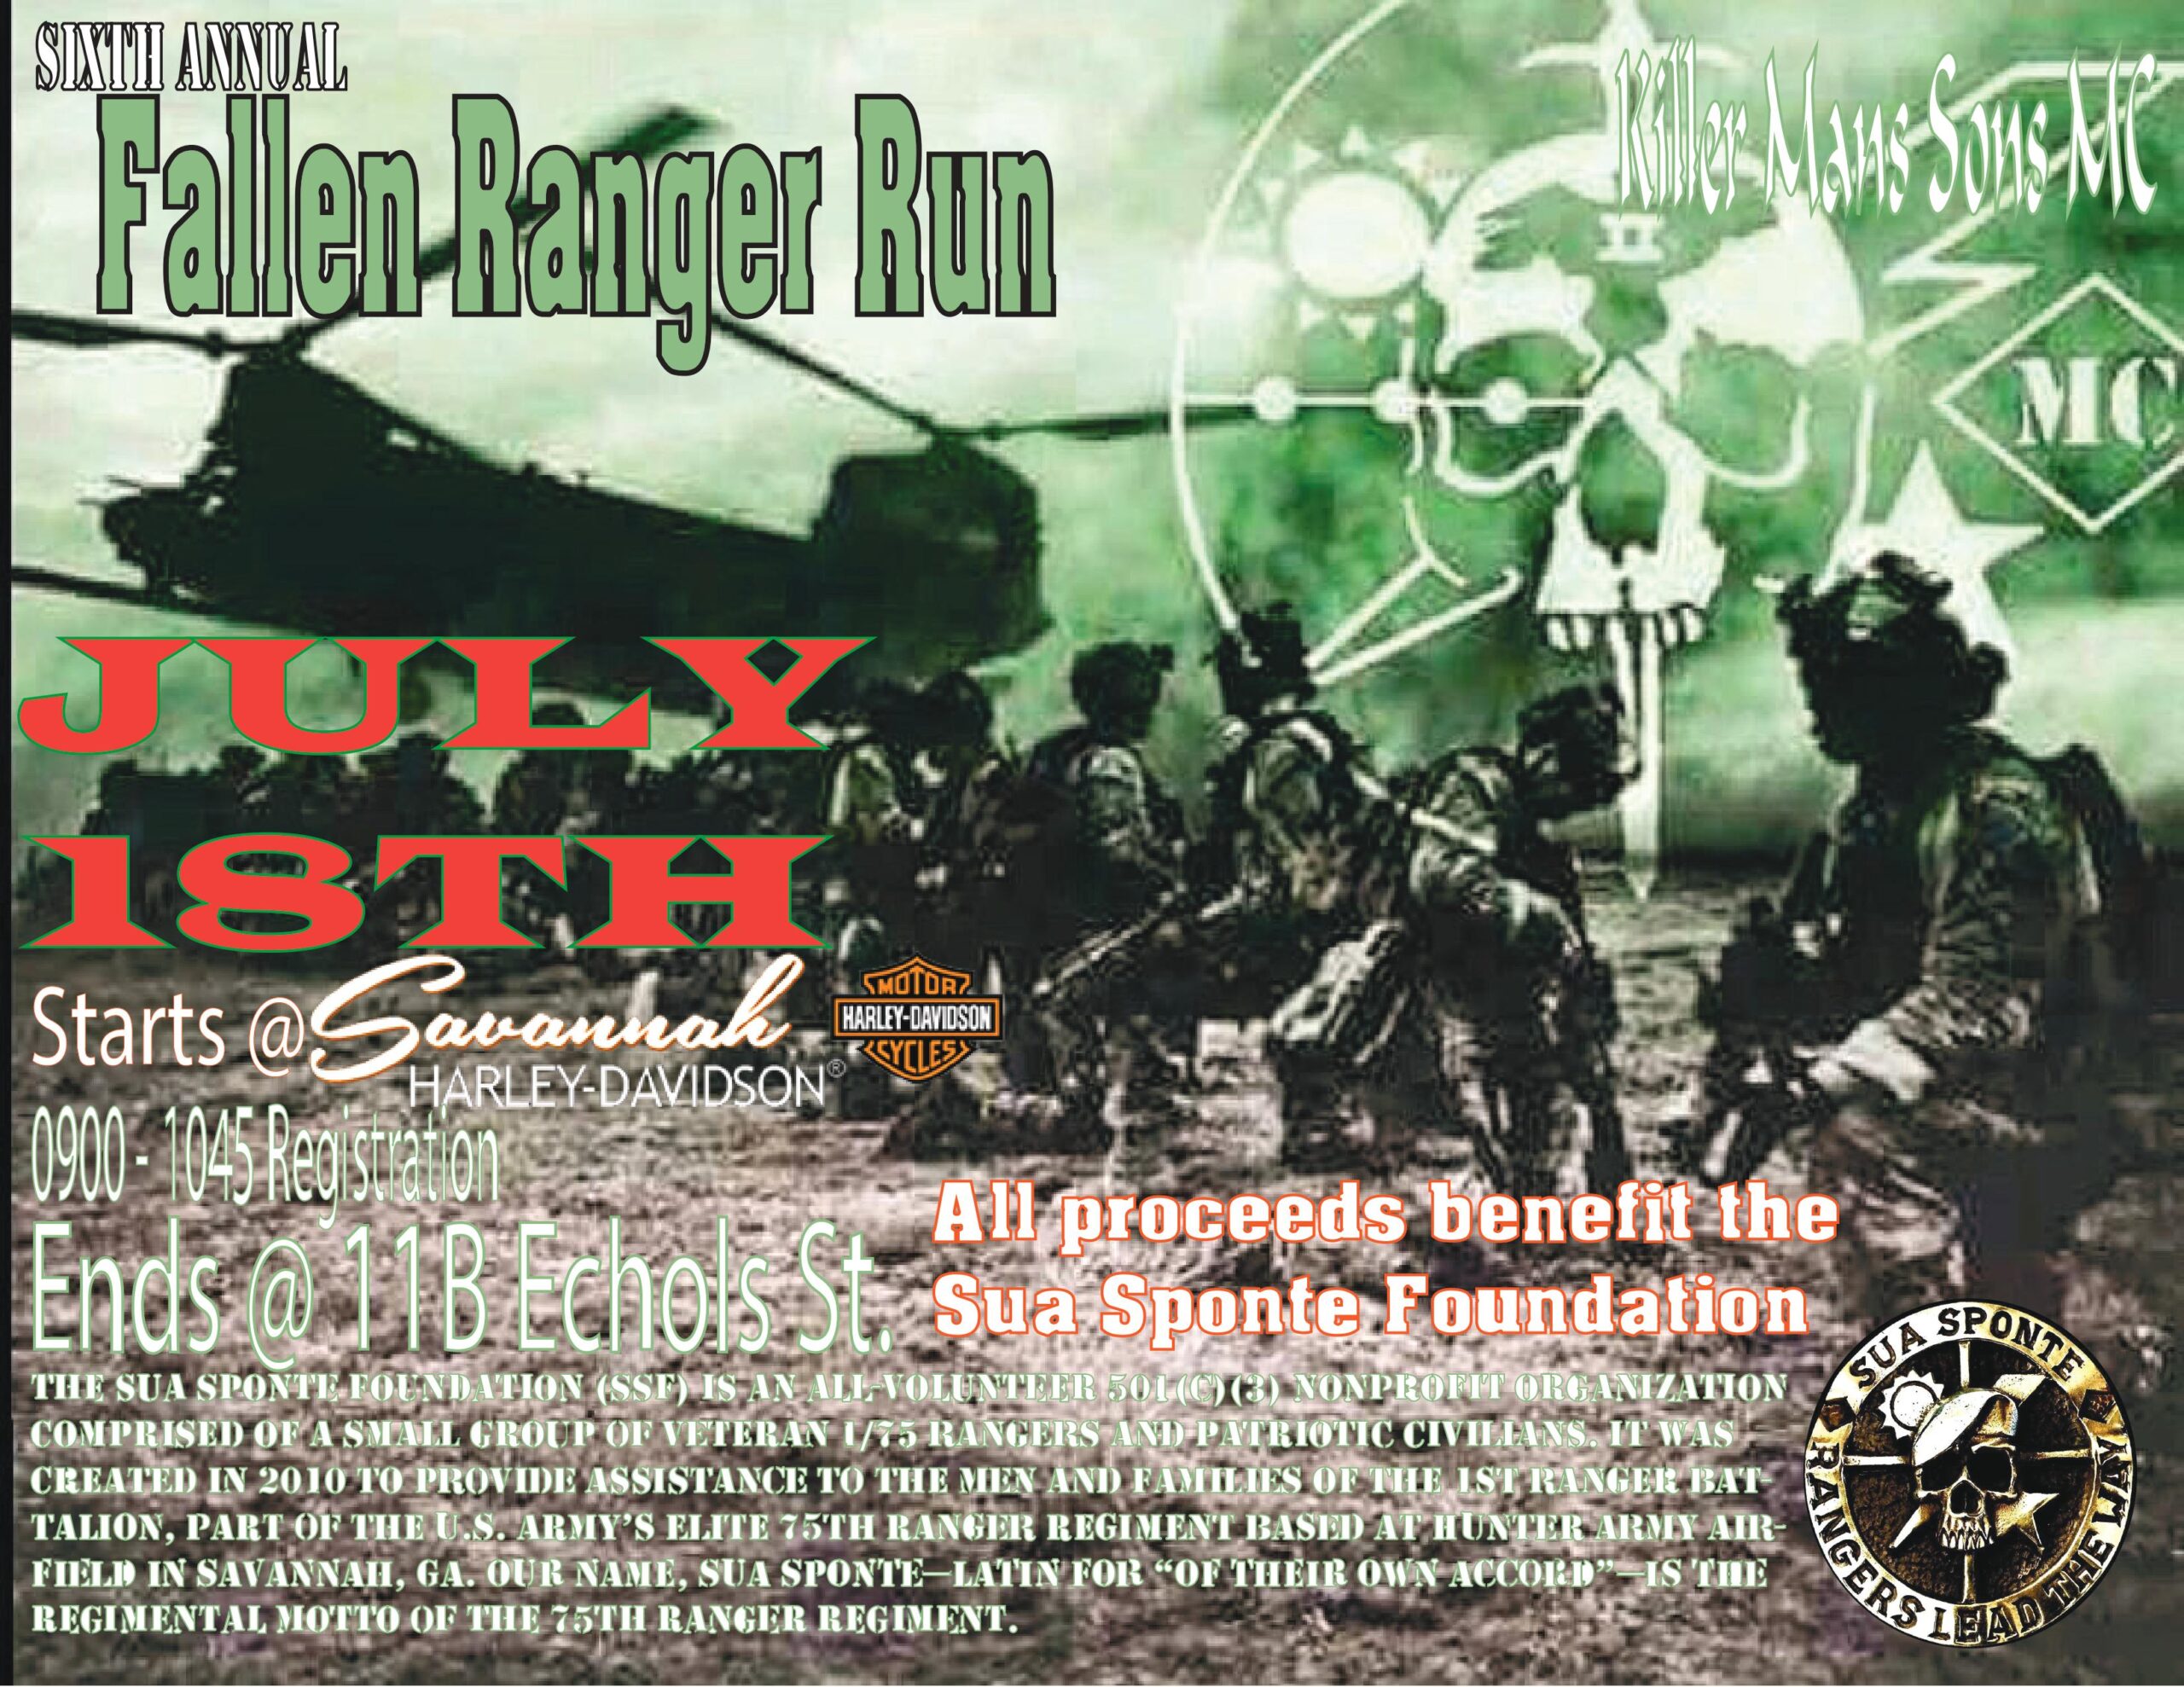 Killer Mans Sons MC - 6th Annual Fallen Ranger Run @ Savannah Harley-Davidson | Savannah | Georgia | United States